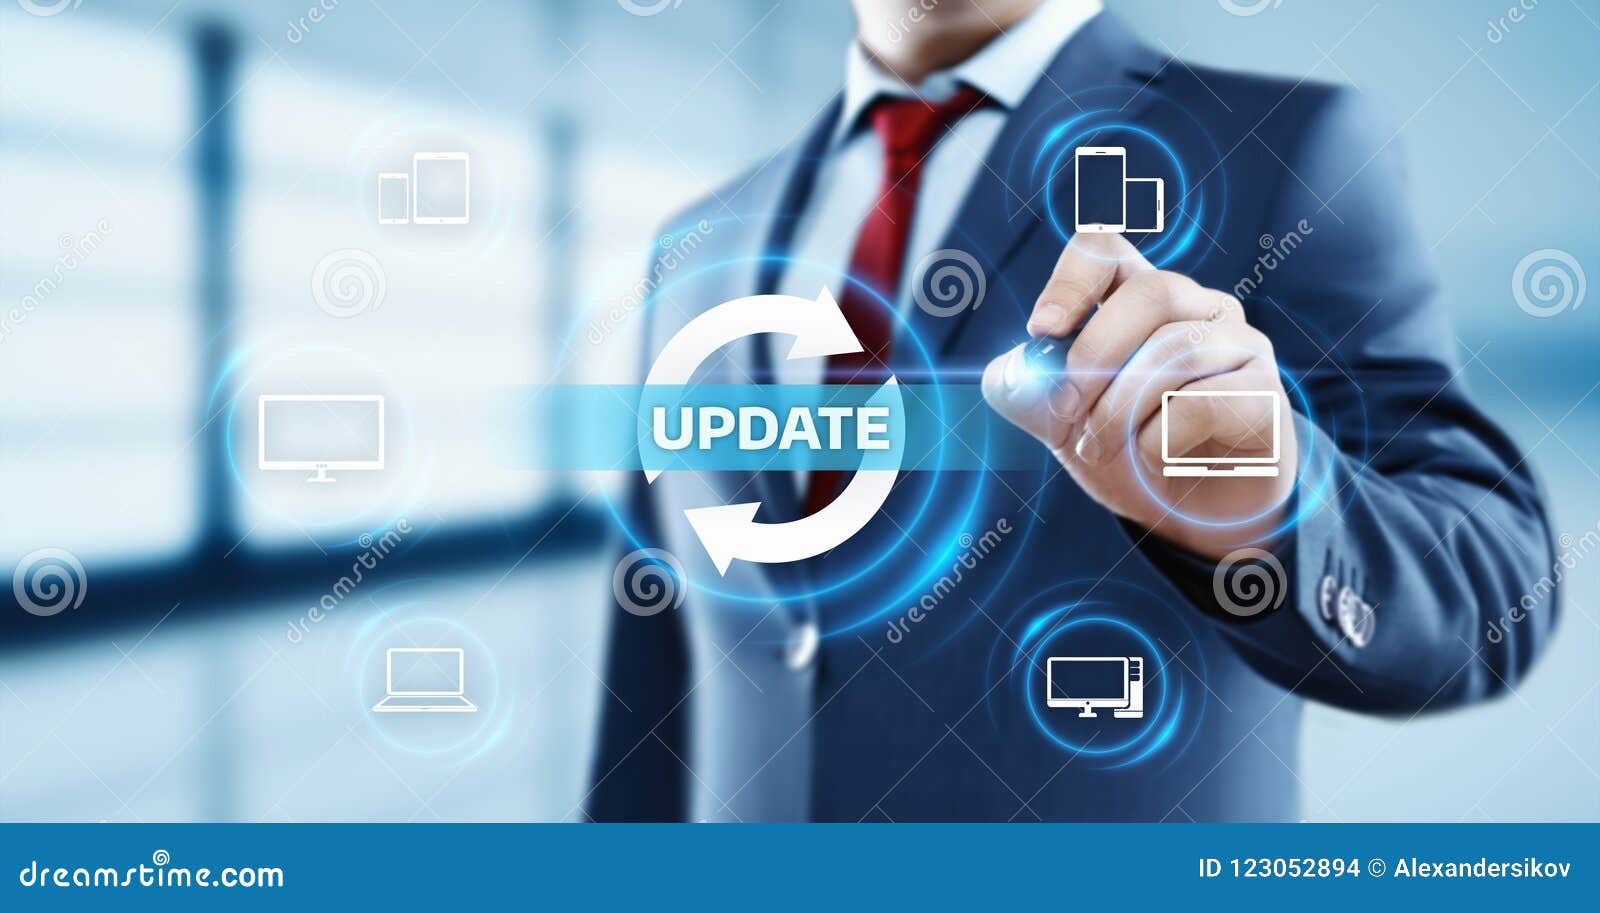 Update Software Computer Program Upgrade Business Technology Internet